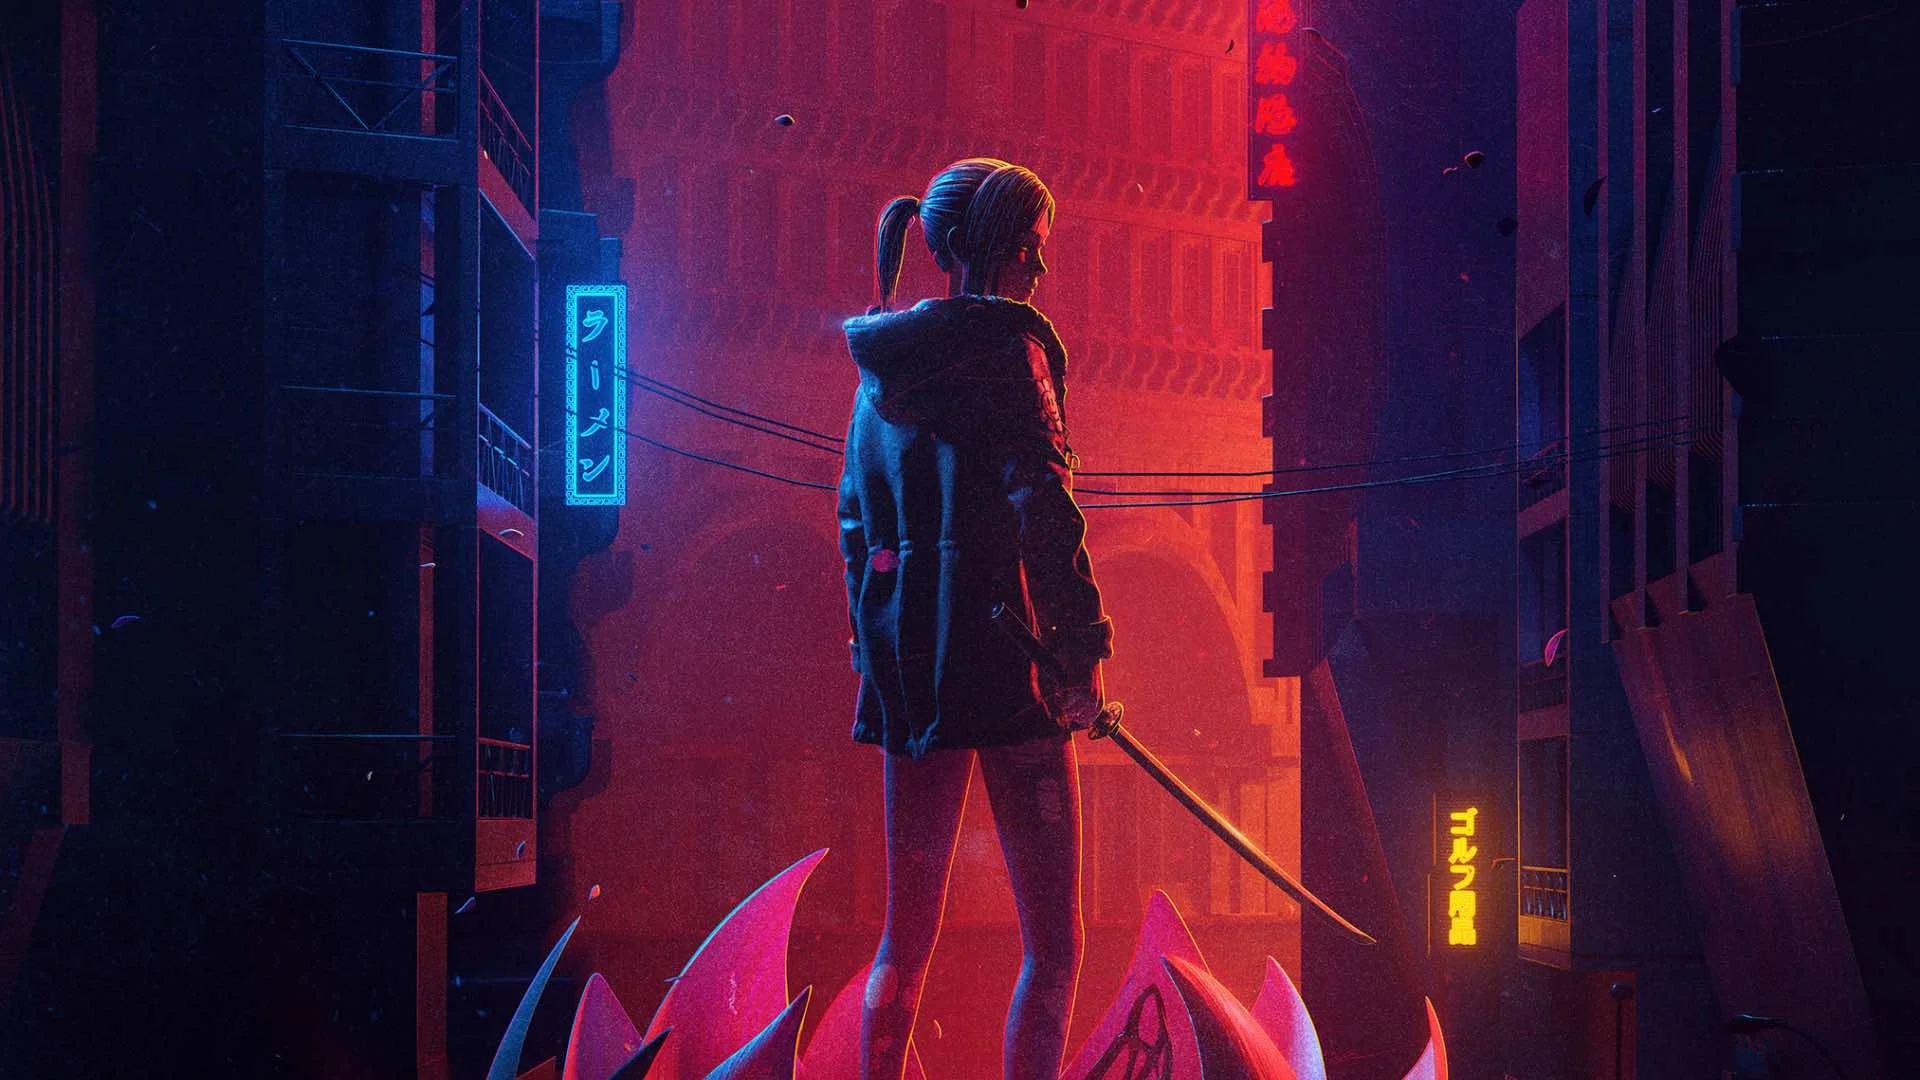 На платформе Crunchyroll стартовало аниме «Бегущий по лезвию: Чёрный лотос» (Blade Runner: Black Lotus). Выполненный в цифровой графике спин-офф знаменитой киберпанковской франшизы заполняет 30-летний временной разрыв между «Бегущим по лезвию» Ридли Скотта и «Бегущим по лезвию 2049» Дени Вильнёва, рассказывая историю девушки-репликанта по имени Эль. Автор «Канобу» Александр Морозов посмотрел два эпизода из тринадцати и объясняет, почему шоу пока не оправдывает ожиданий.